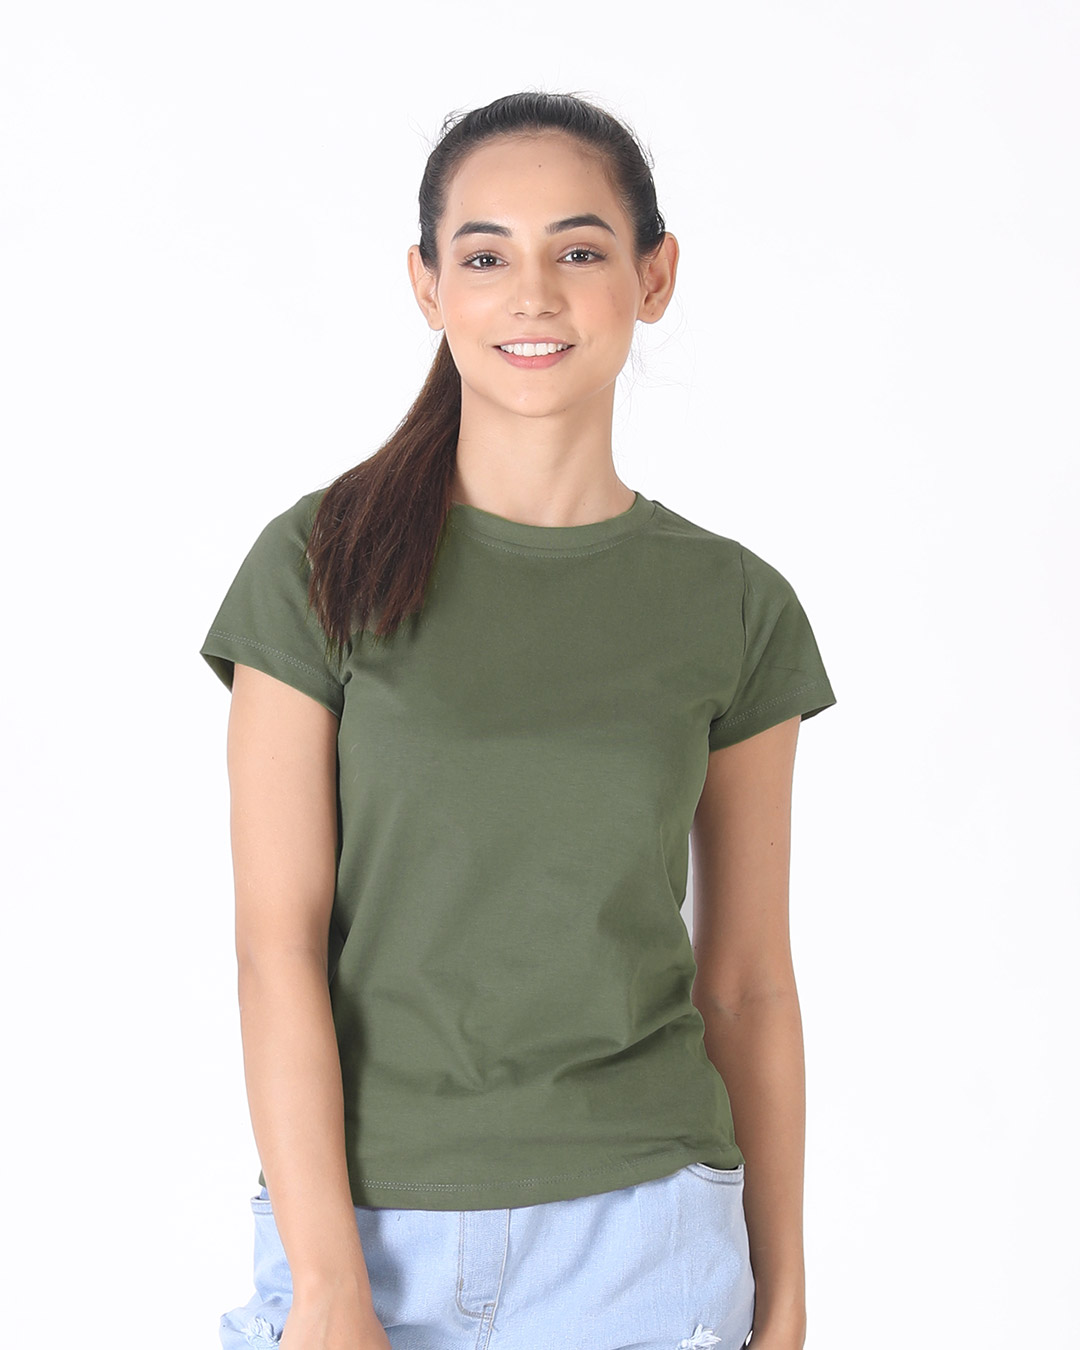 army green shirt women's